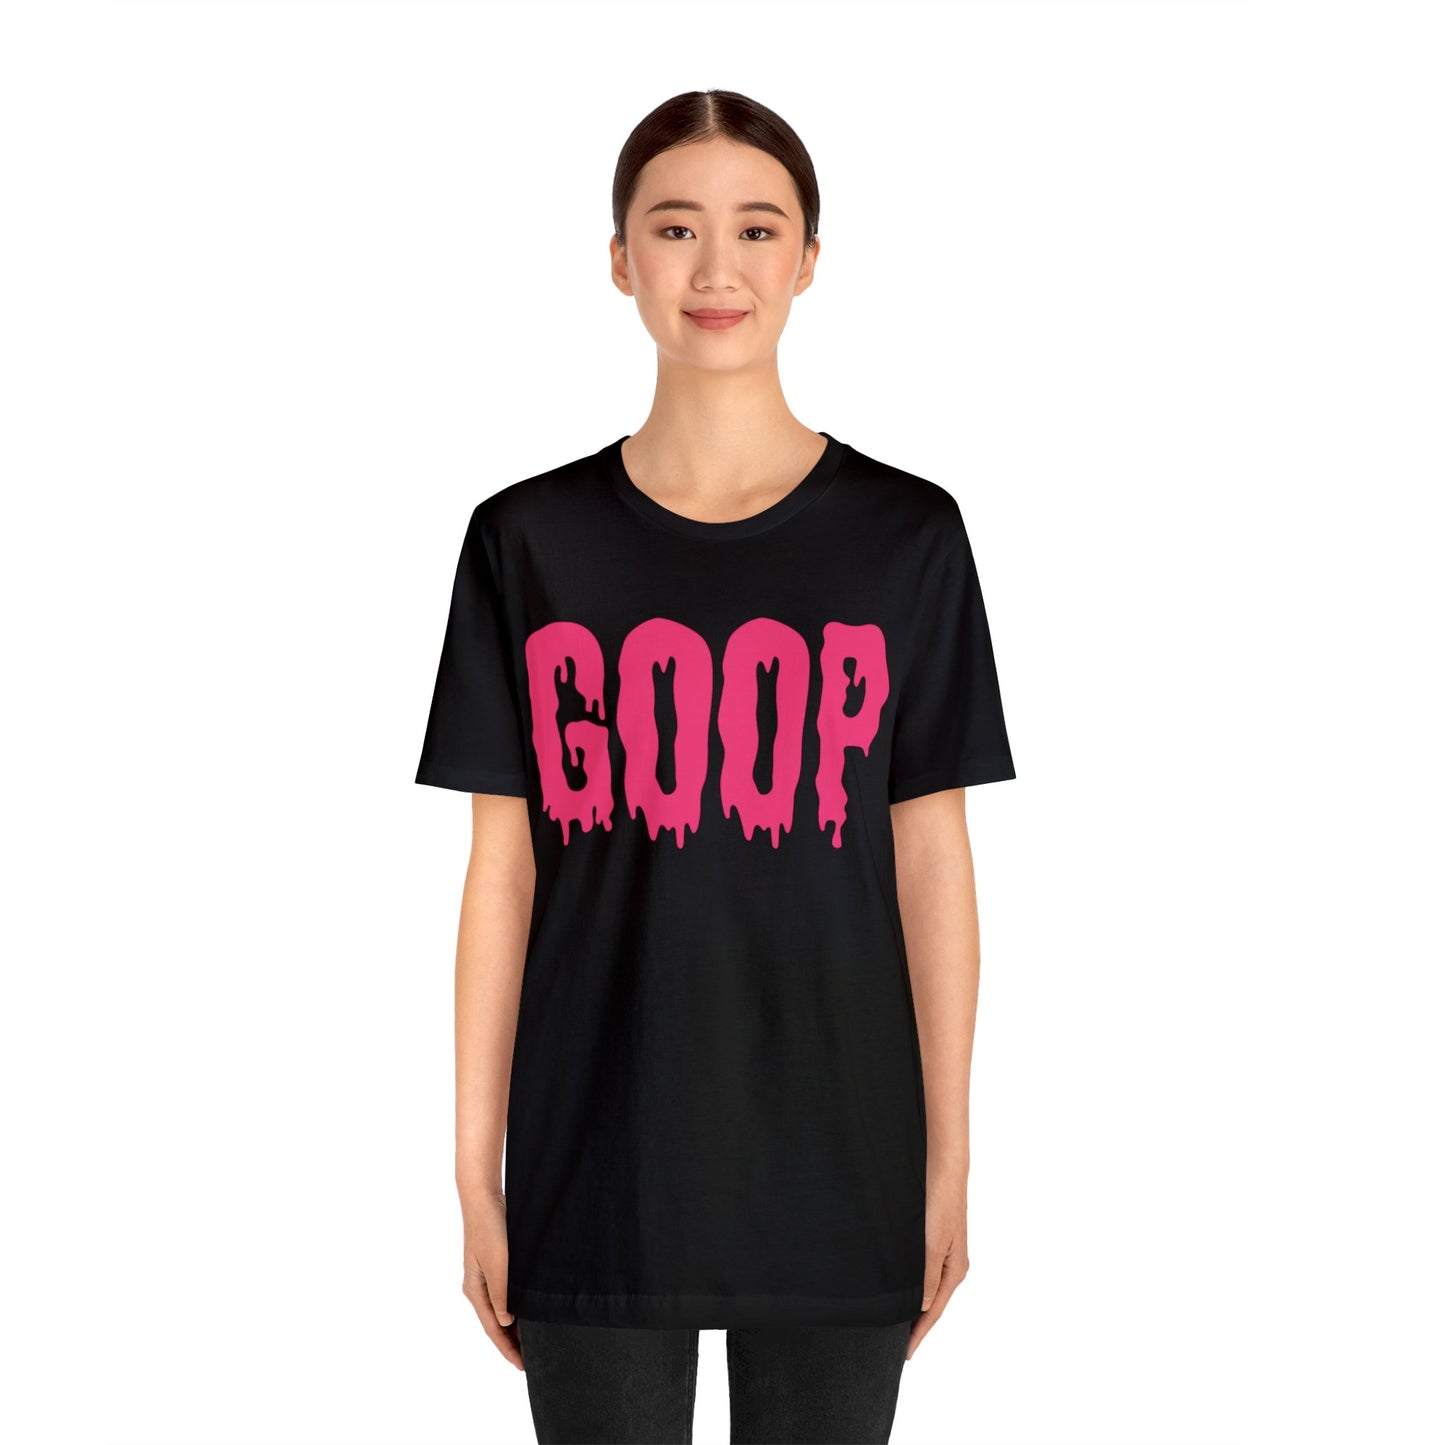 Goop T-Shirt